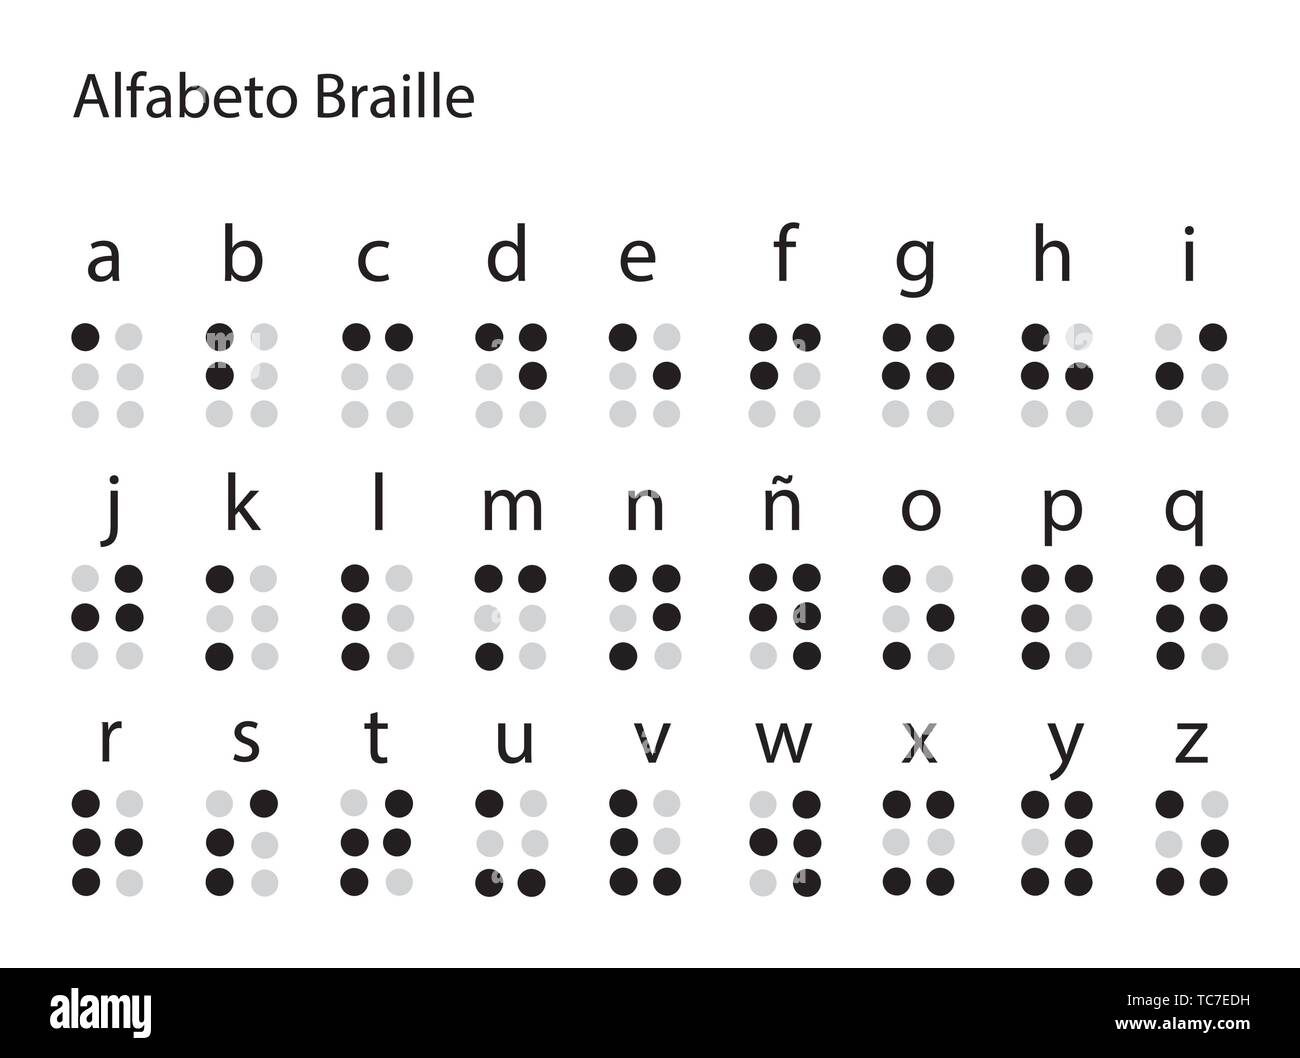 Alfabeto Braille Espanol